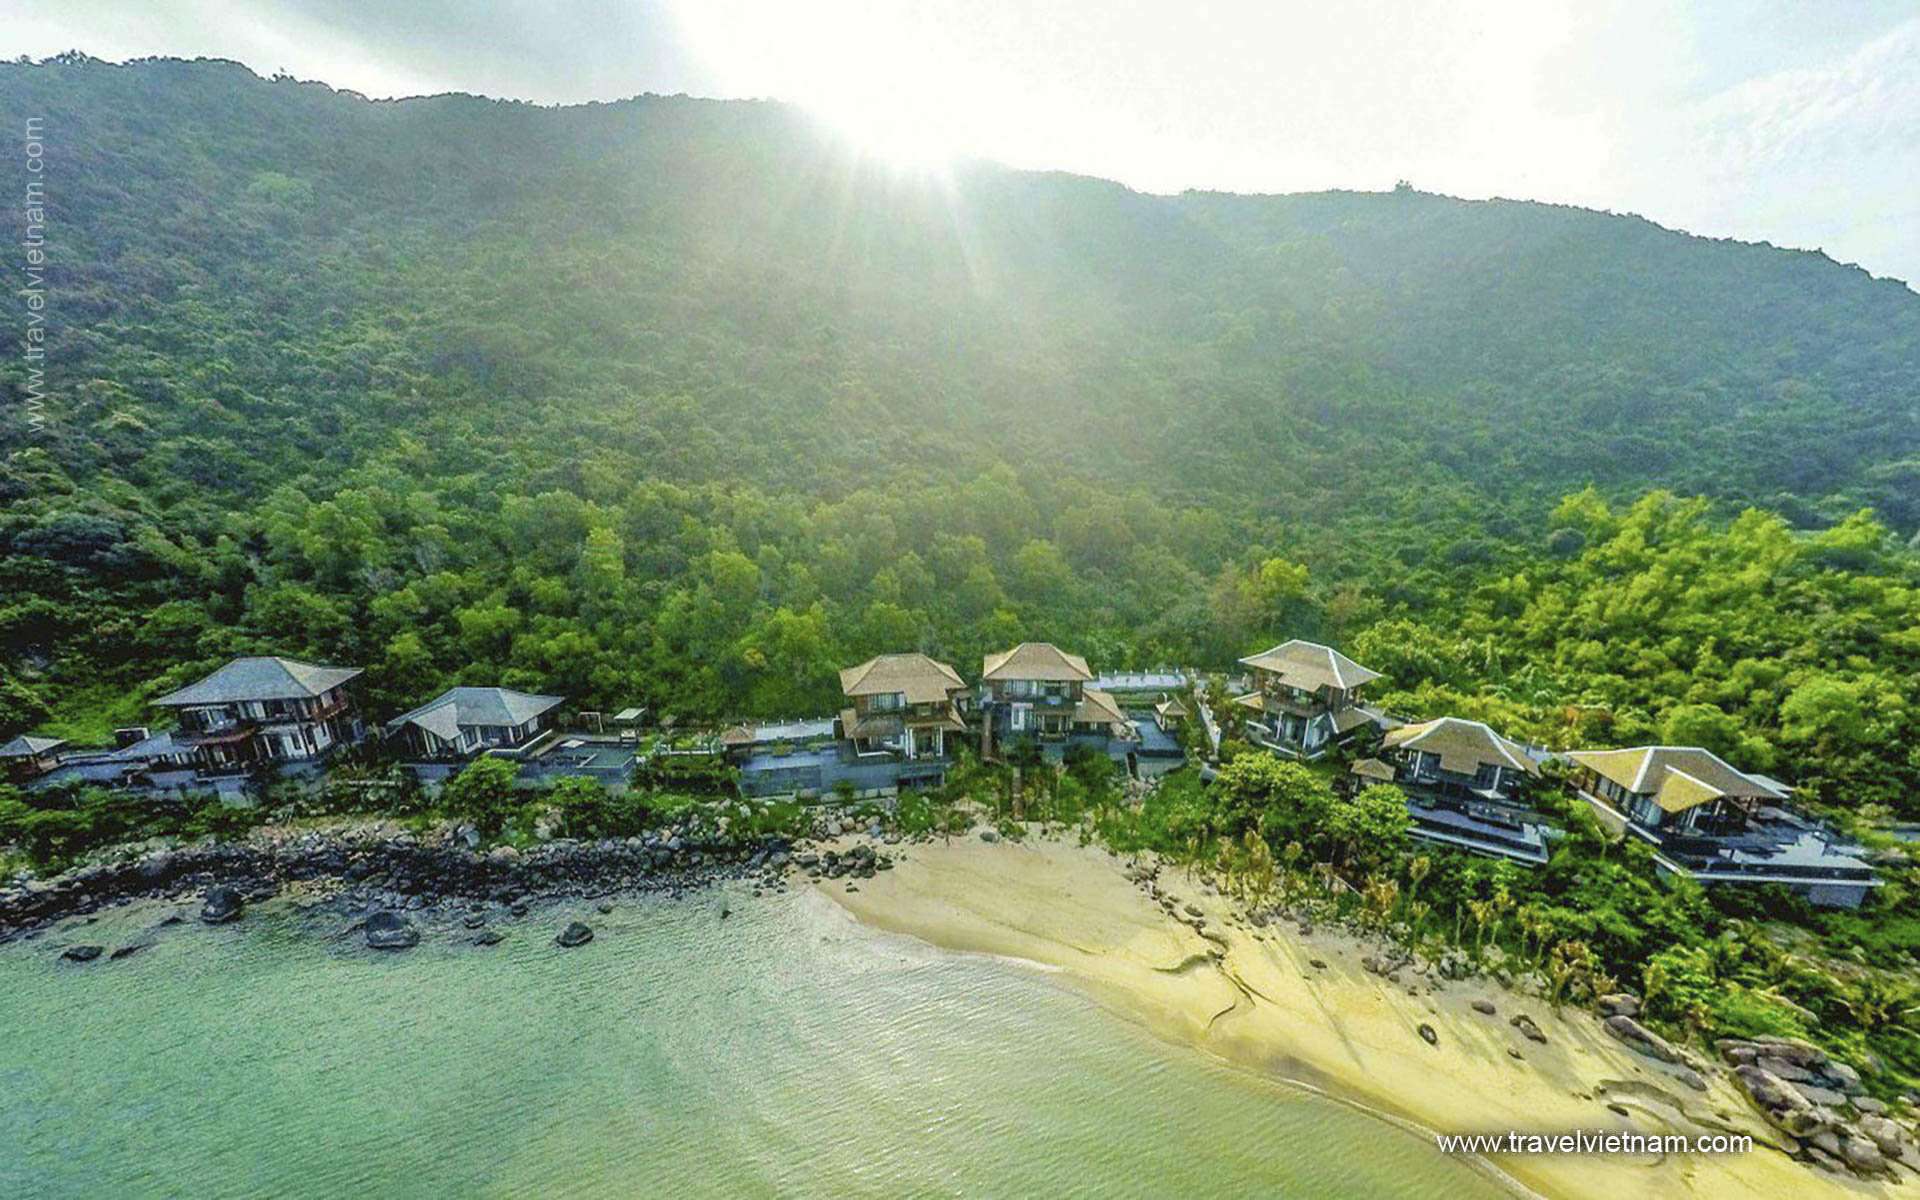  InterContinental Danang Sun Peninsula Resort